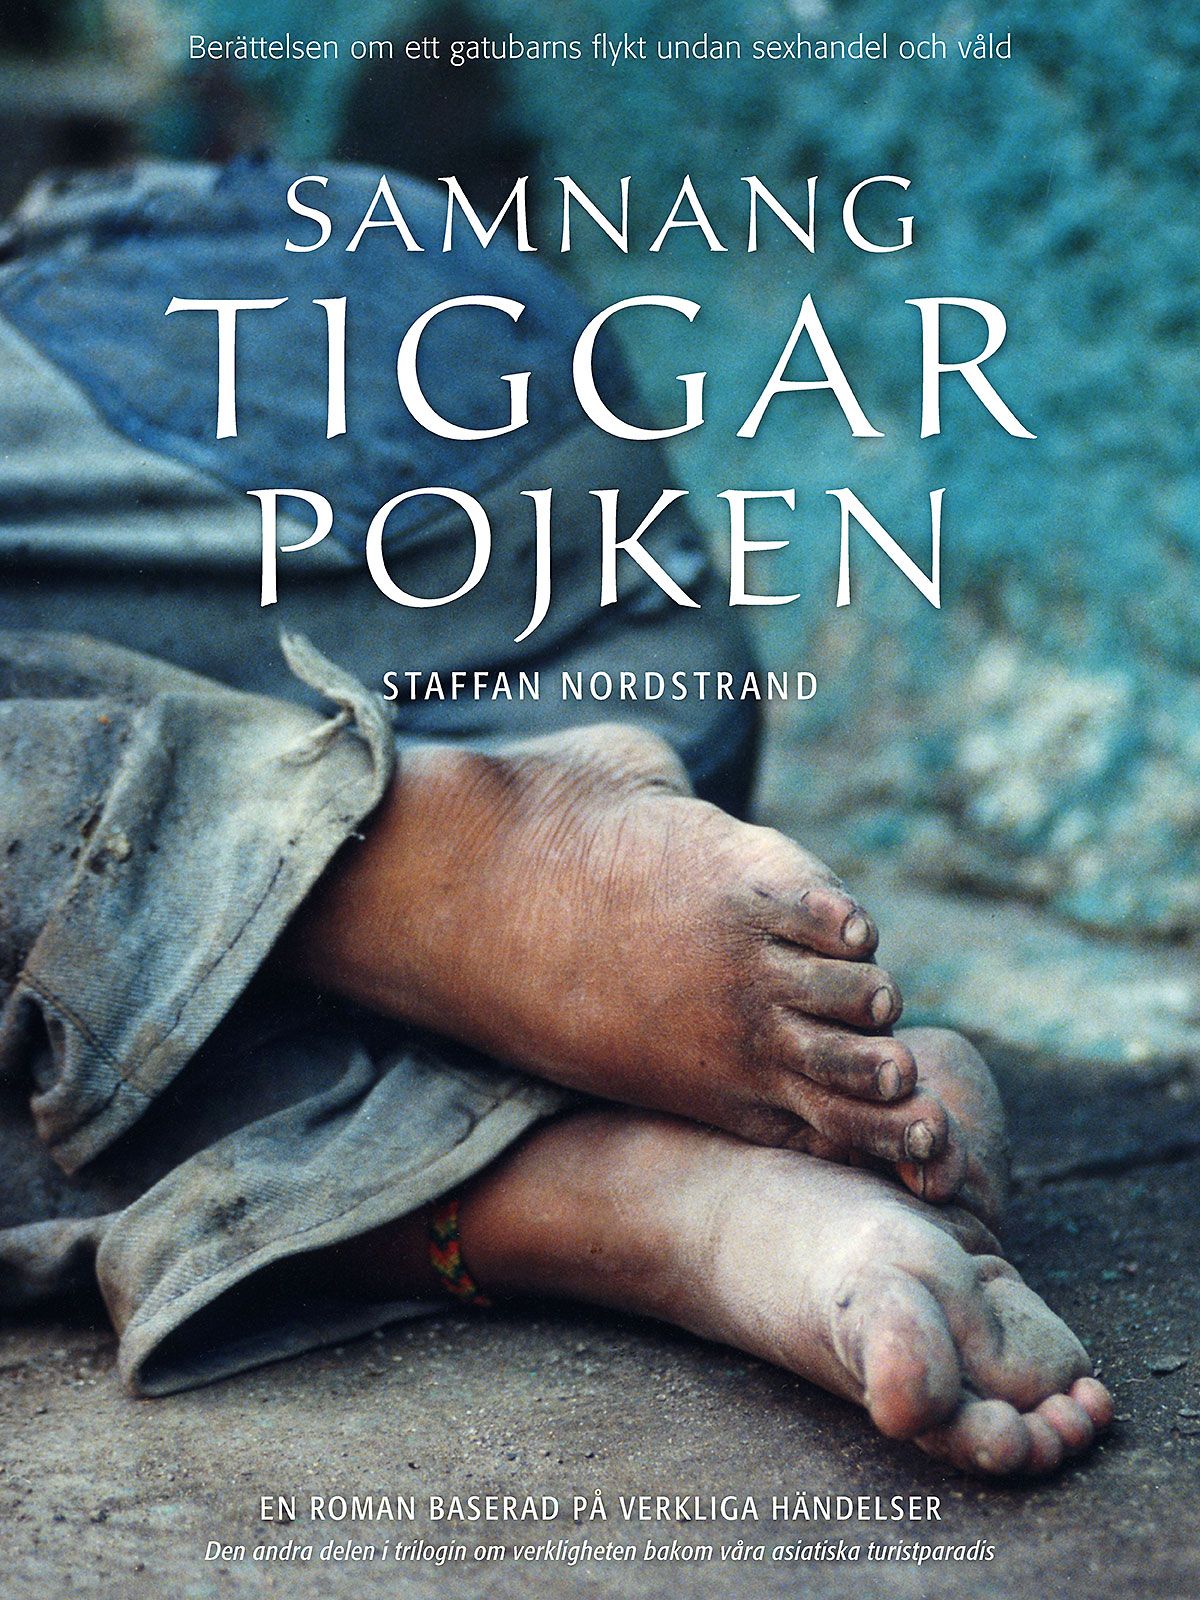 Samnang, tiggarpojken, eBook by Staffan Nordstrand